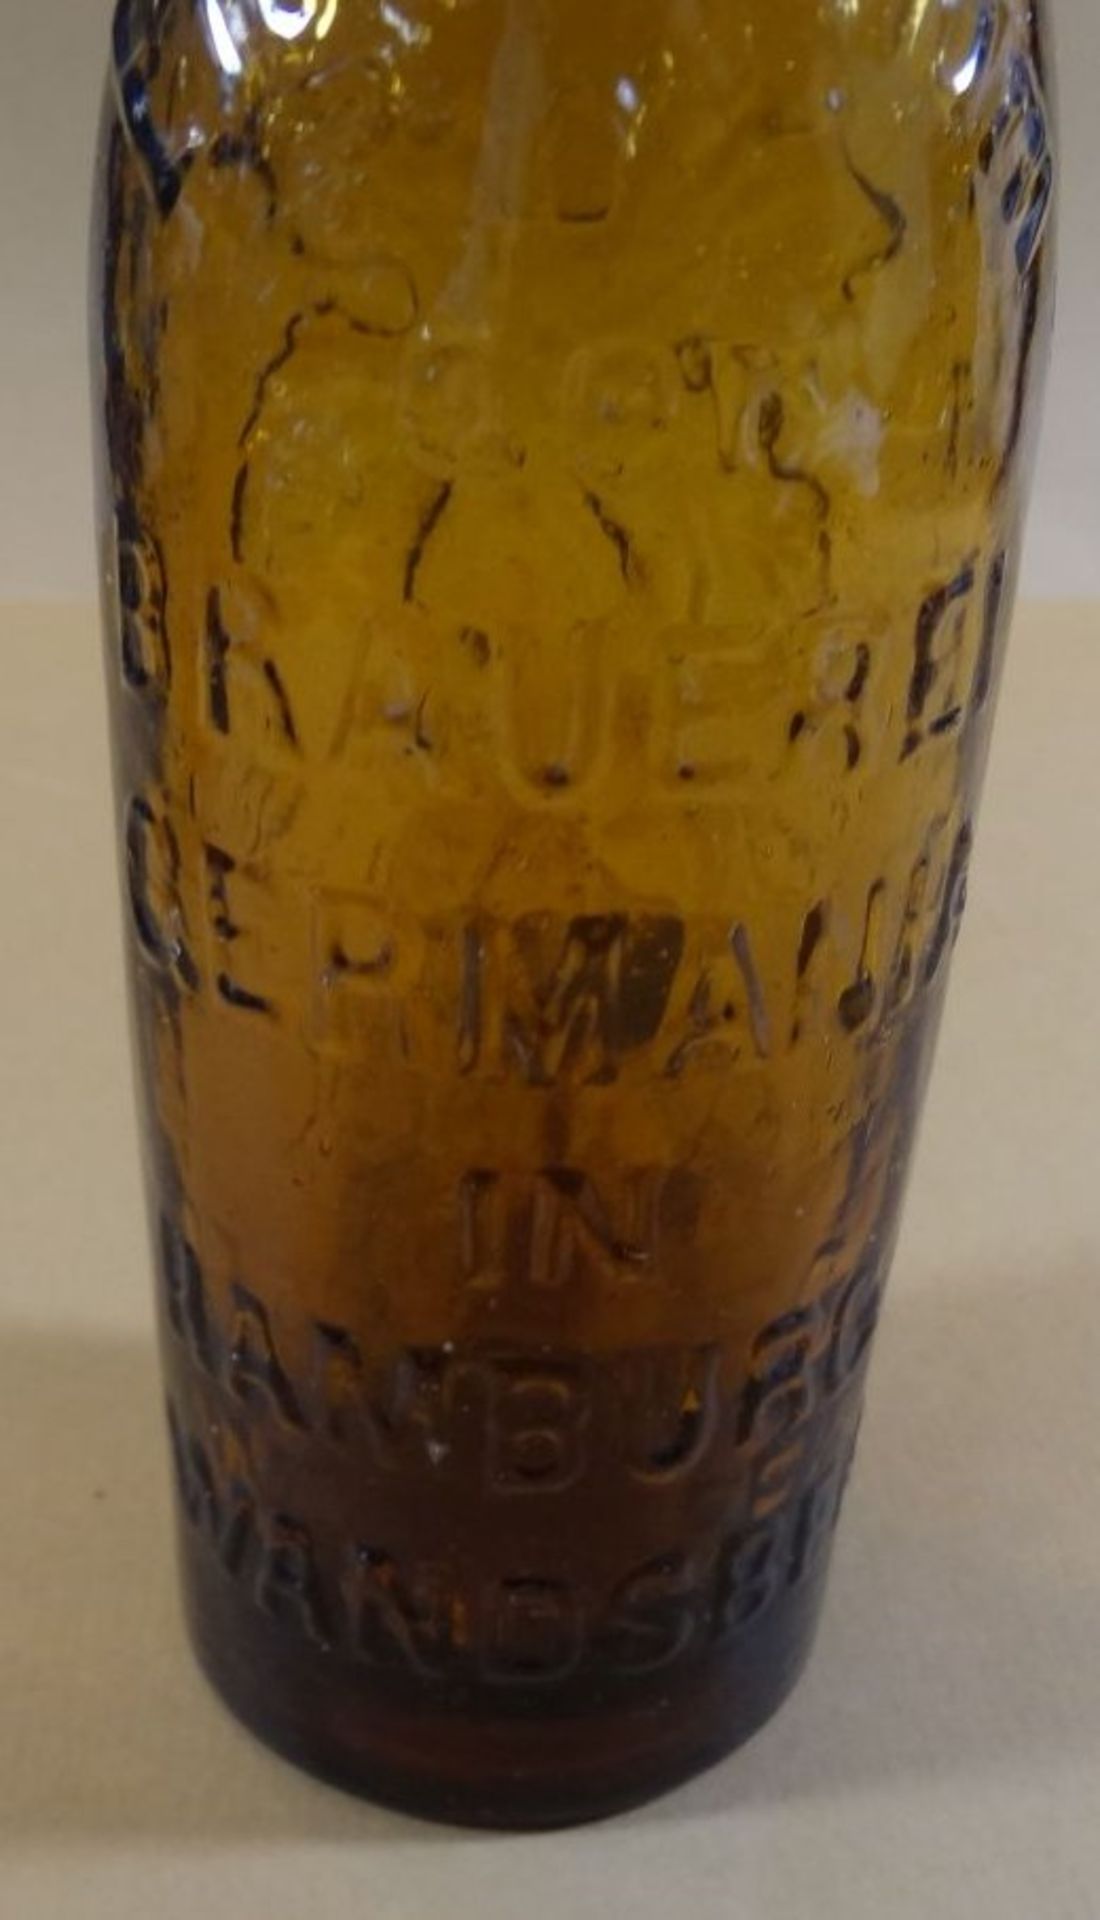 Bierflasche um 1900 "Germania Bier" Wandsbek, um 1900, H-26 cm - Bild 2 aus 6